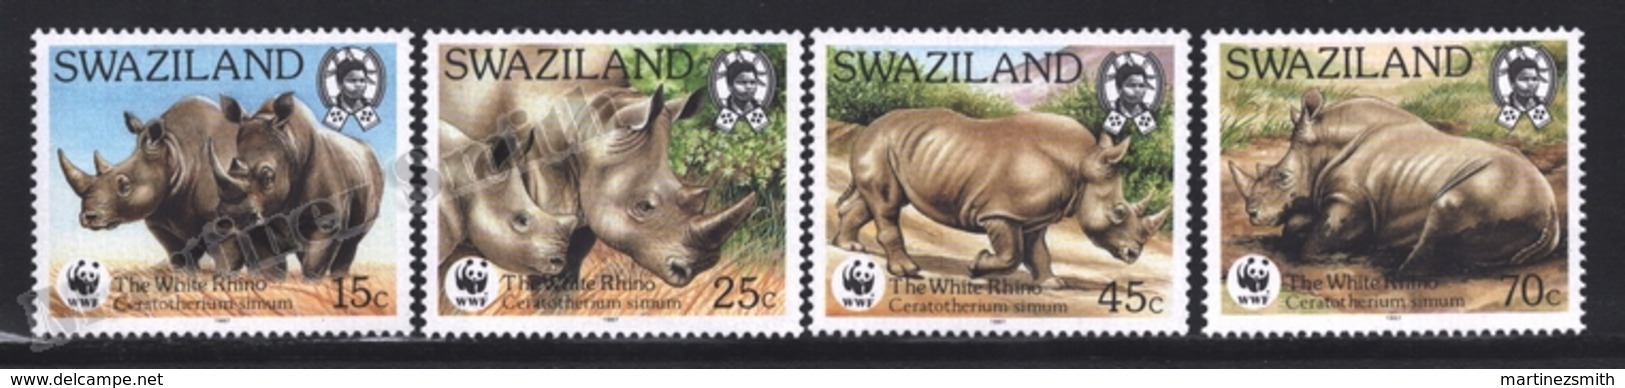 Swaziland 1987 Yvert 525-28, Protected Fauna. Rhino, Rhinoceros - MNH - Swaziland (1968-...)